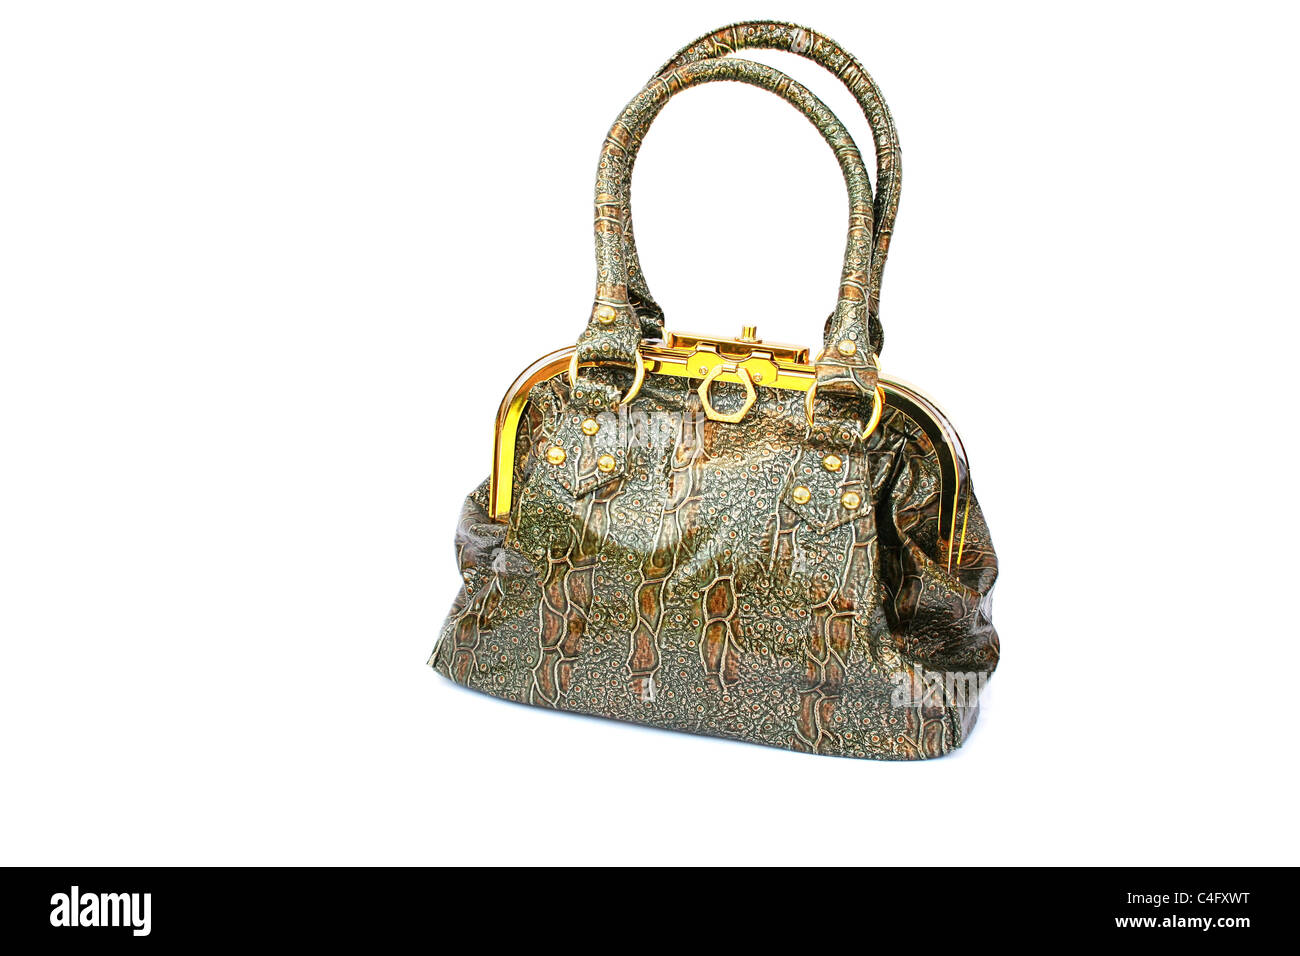 Woman glamor handbag hi-res stock photography and images - Alamy